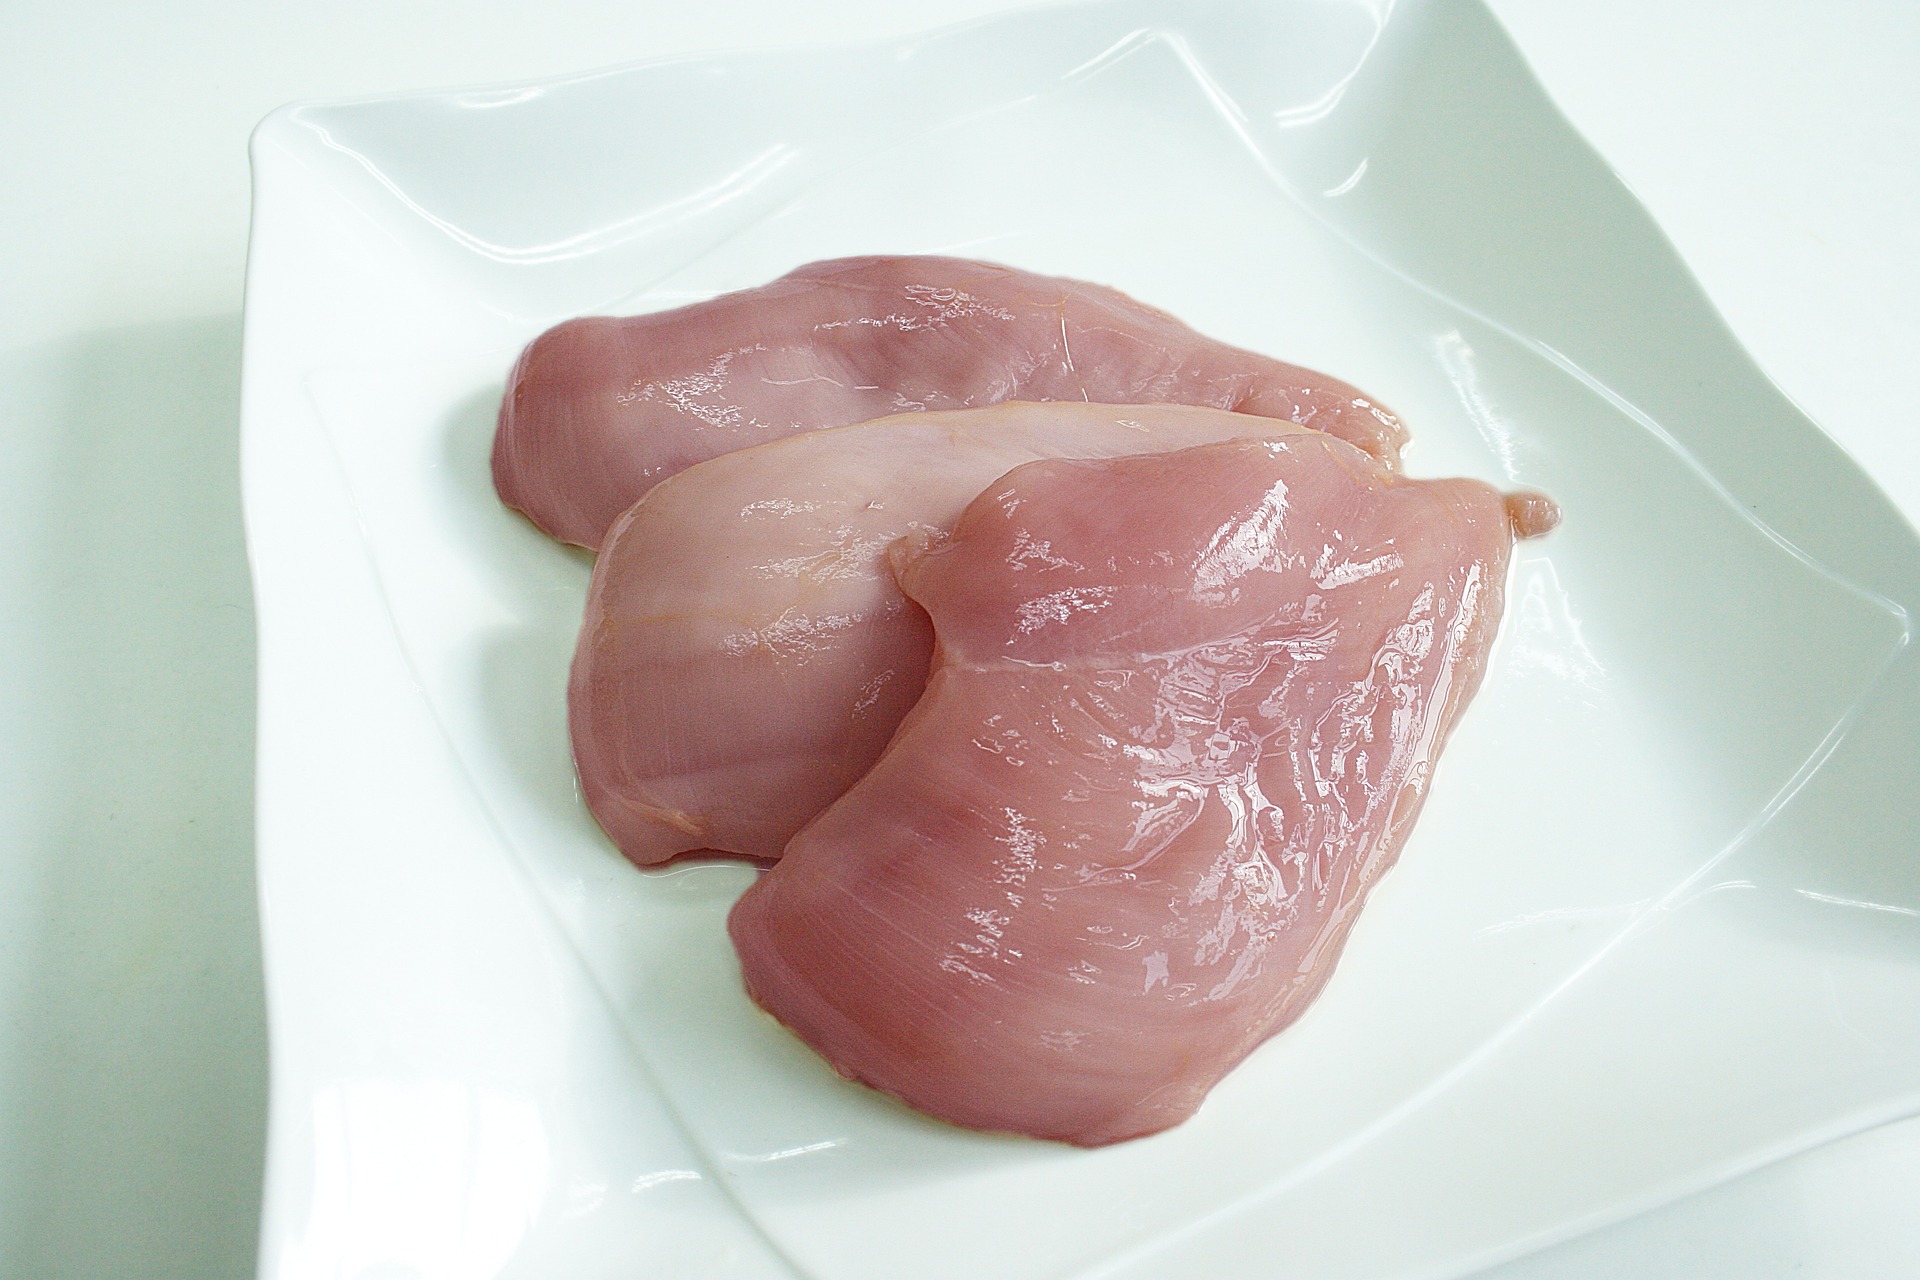 단백질이 풍부한 대표적인 음식인 닭가슴살